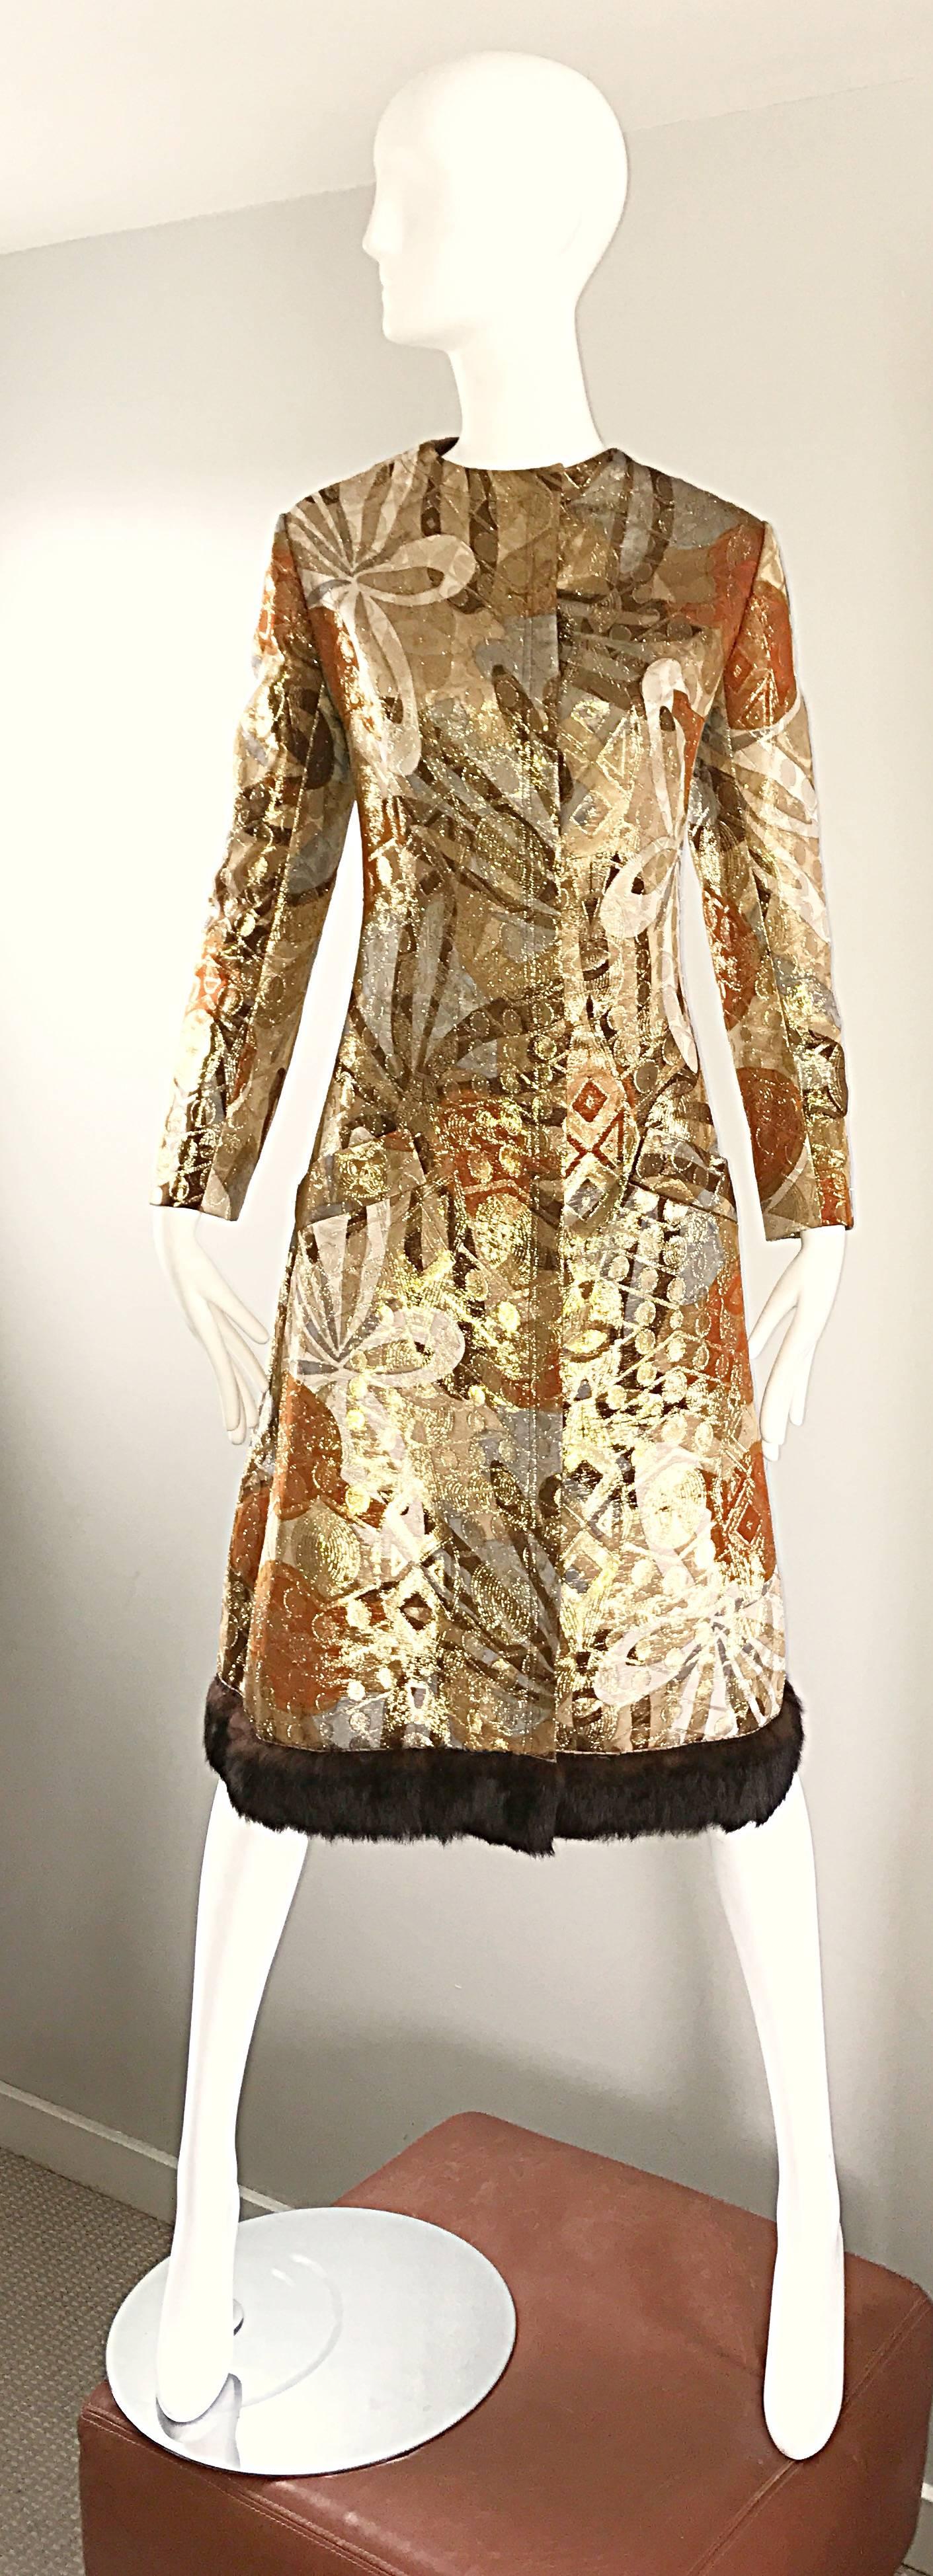 Sensationelle Vintage 1960er BILL BLASS metallische Seide A-Linie Kleid oder Jacke! Mit fabelhaften abstrakten Drucken in warmen Gold-, Braun-, Silber- und Bronzetönen. Weicher brauner Nerzpelzbesatz entlang des Saums. Taschen an beiden Seiten der